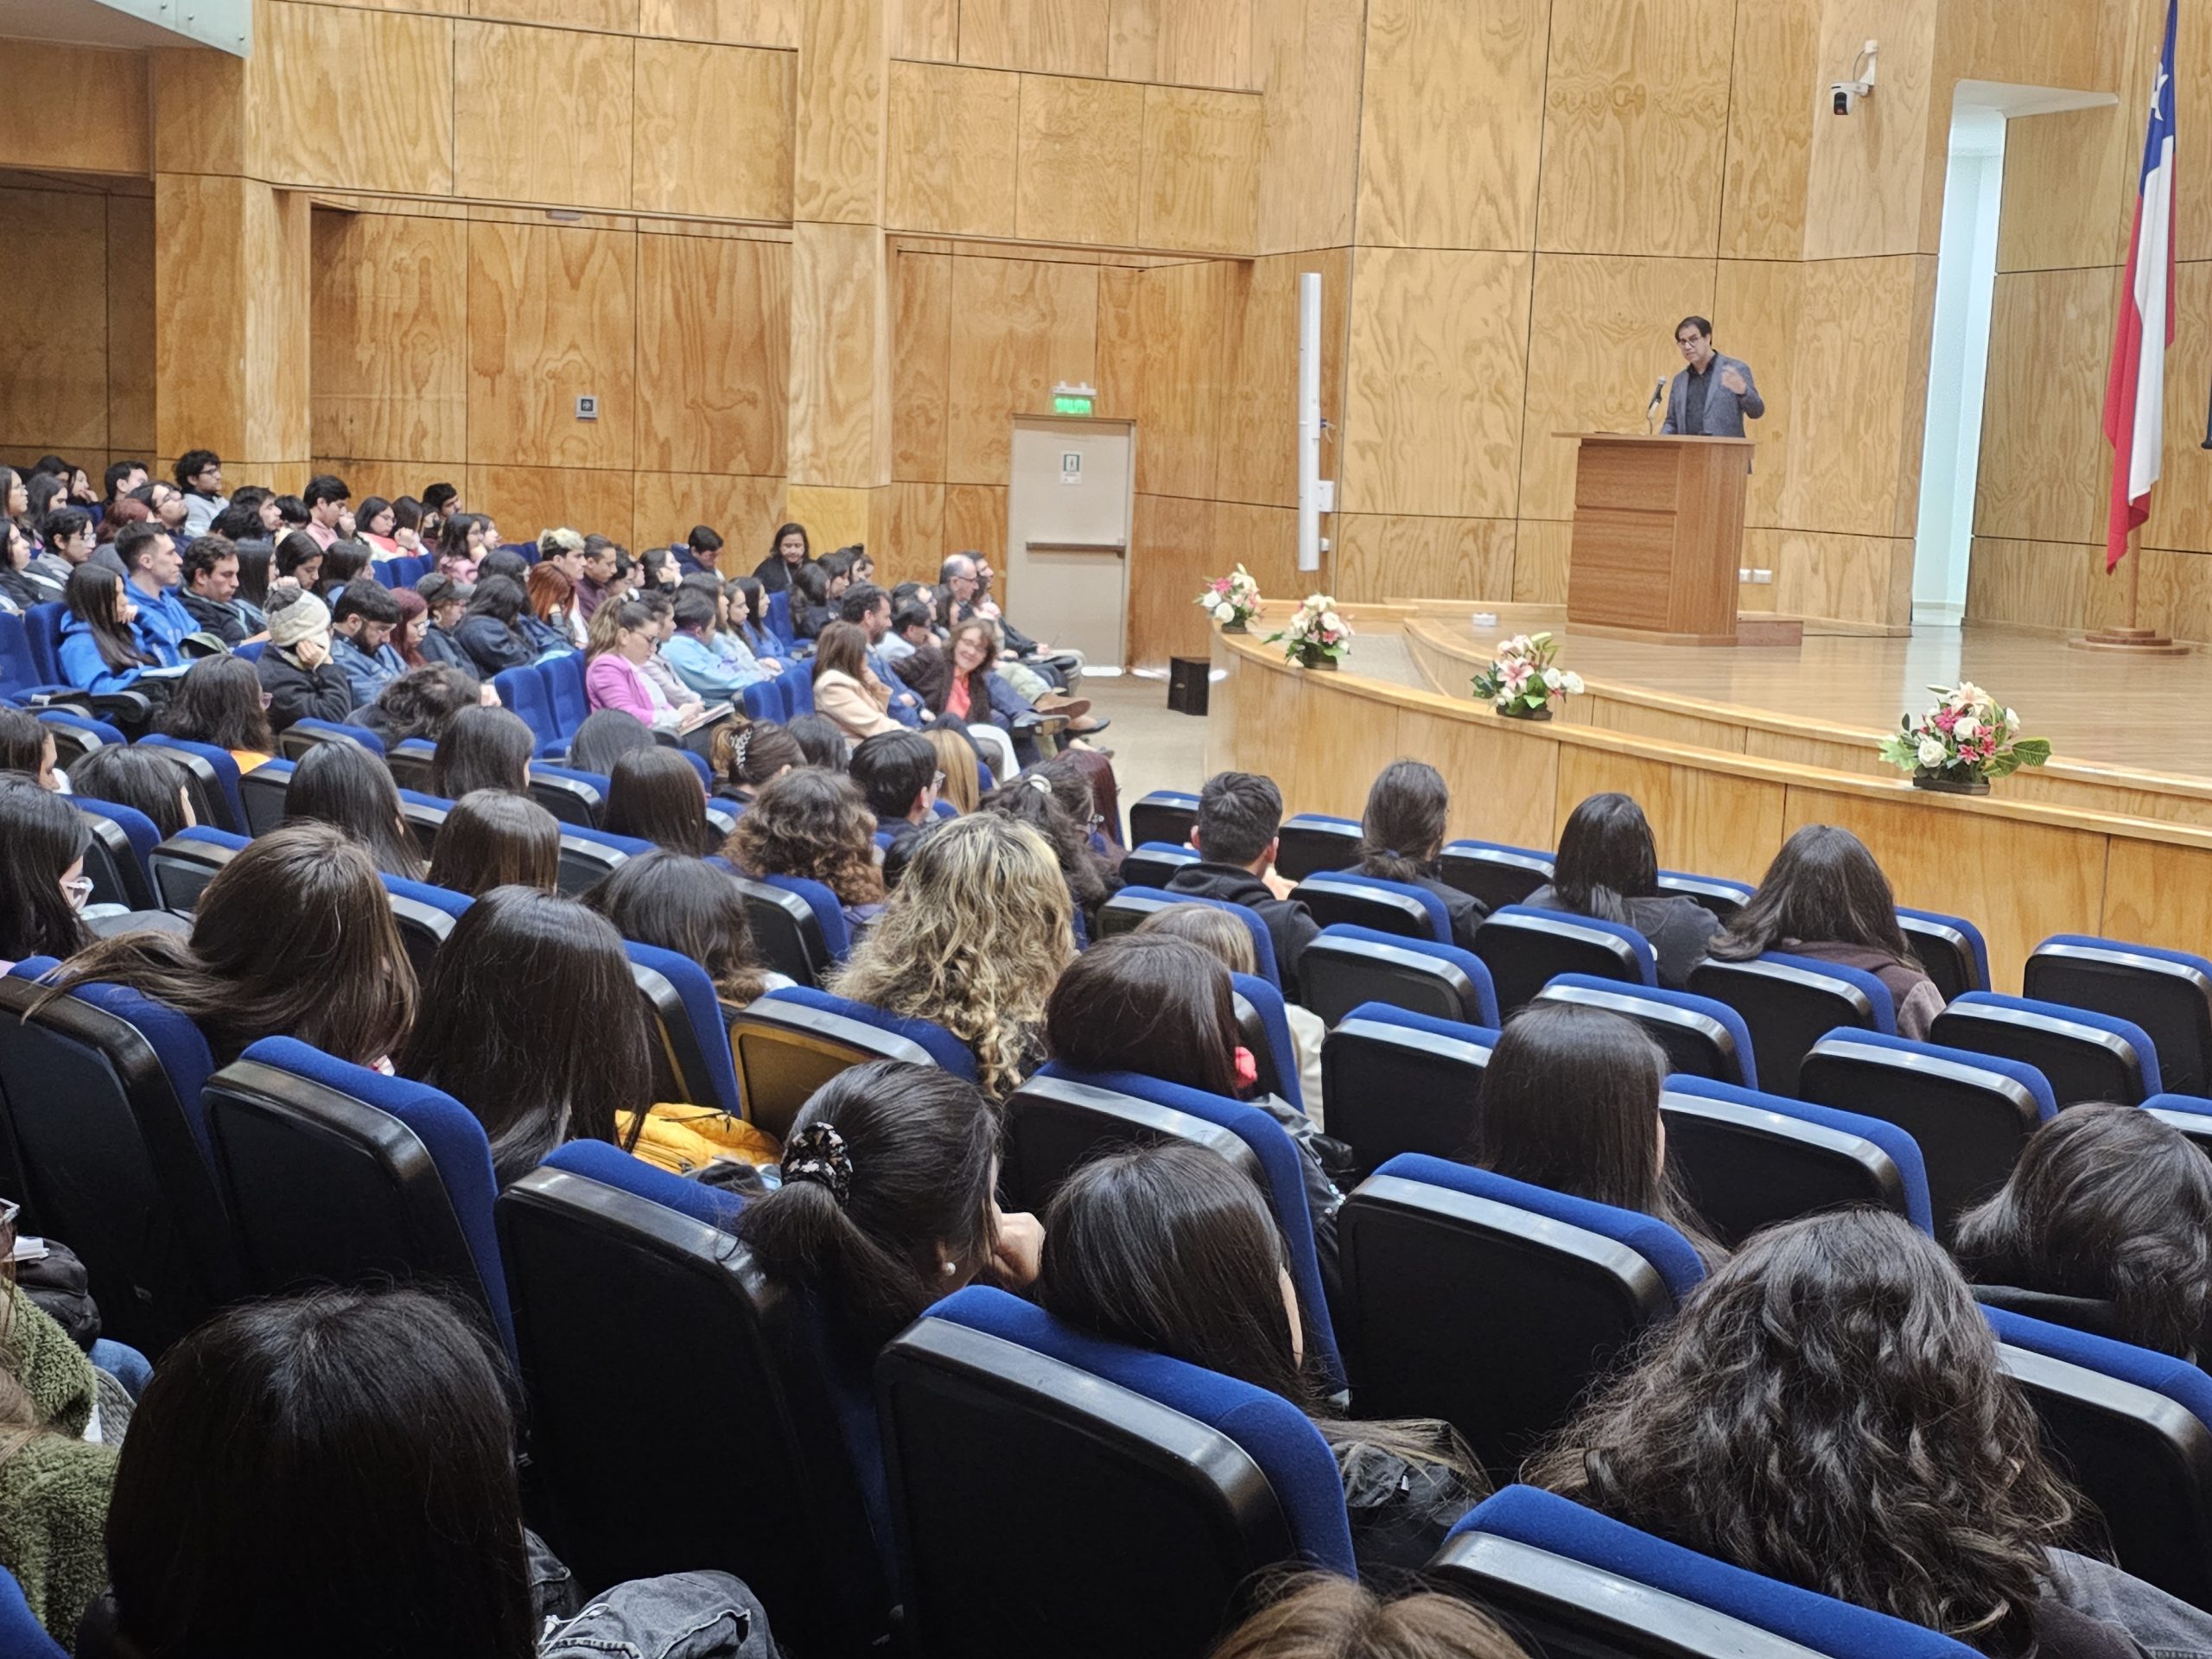 Escuela de Psicología UBB celebró XVII aniversario con conferencia y una masiva participación estudiantil